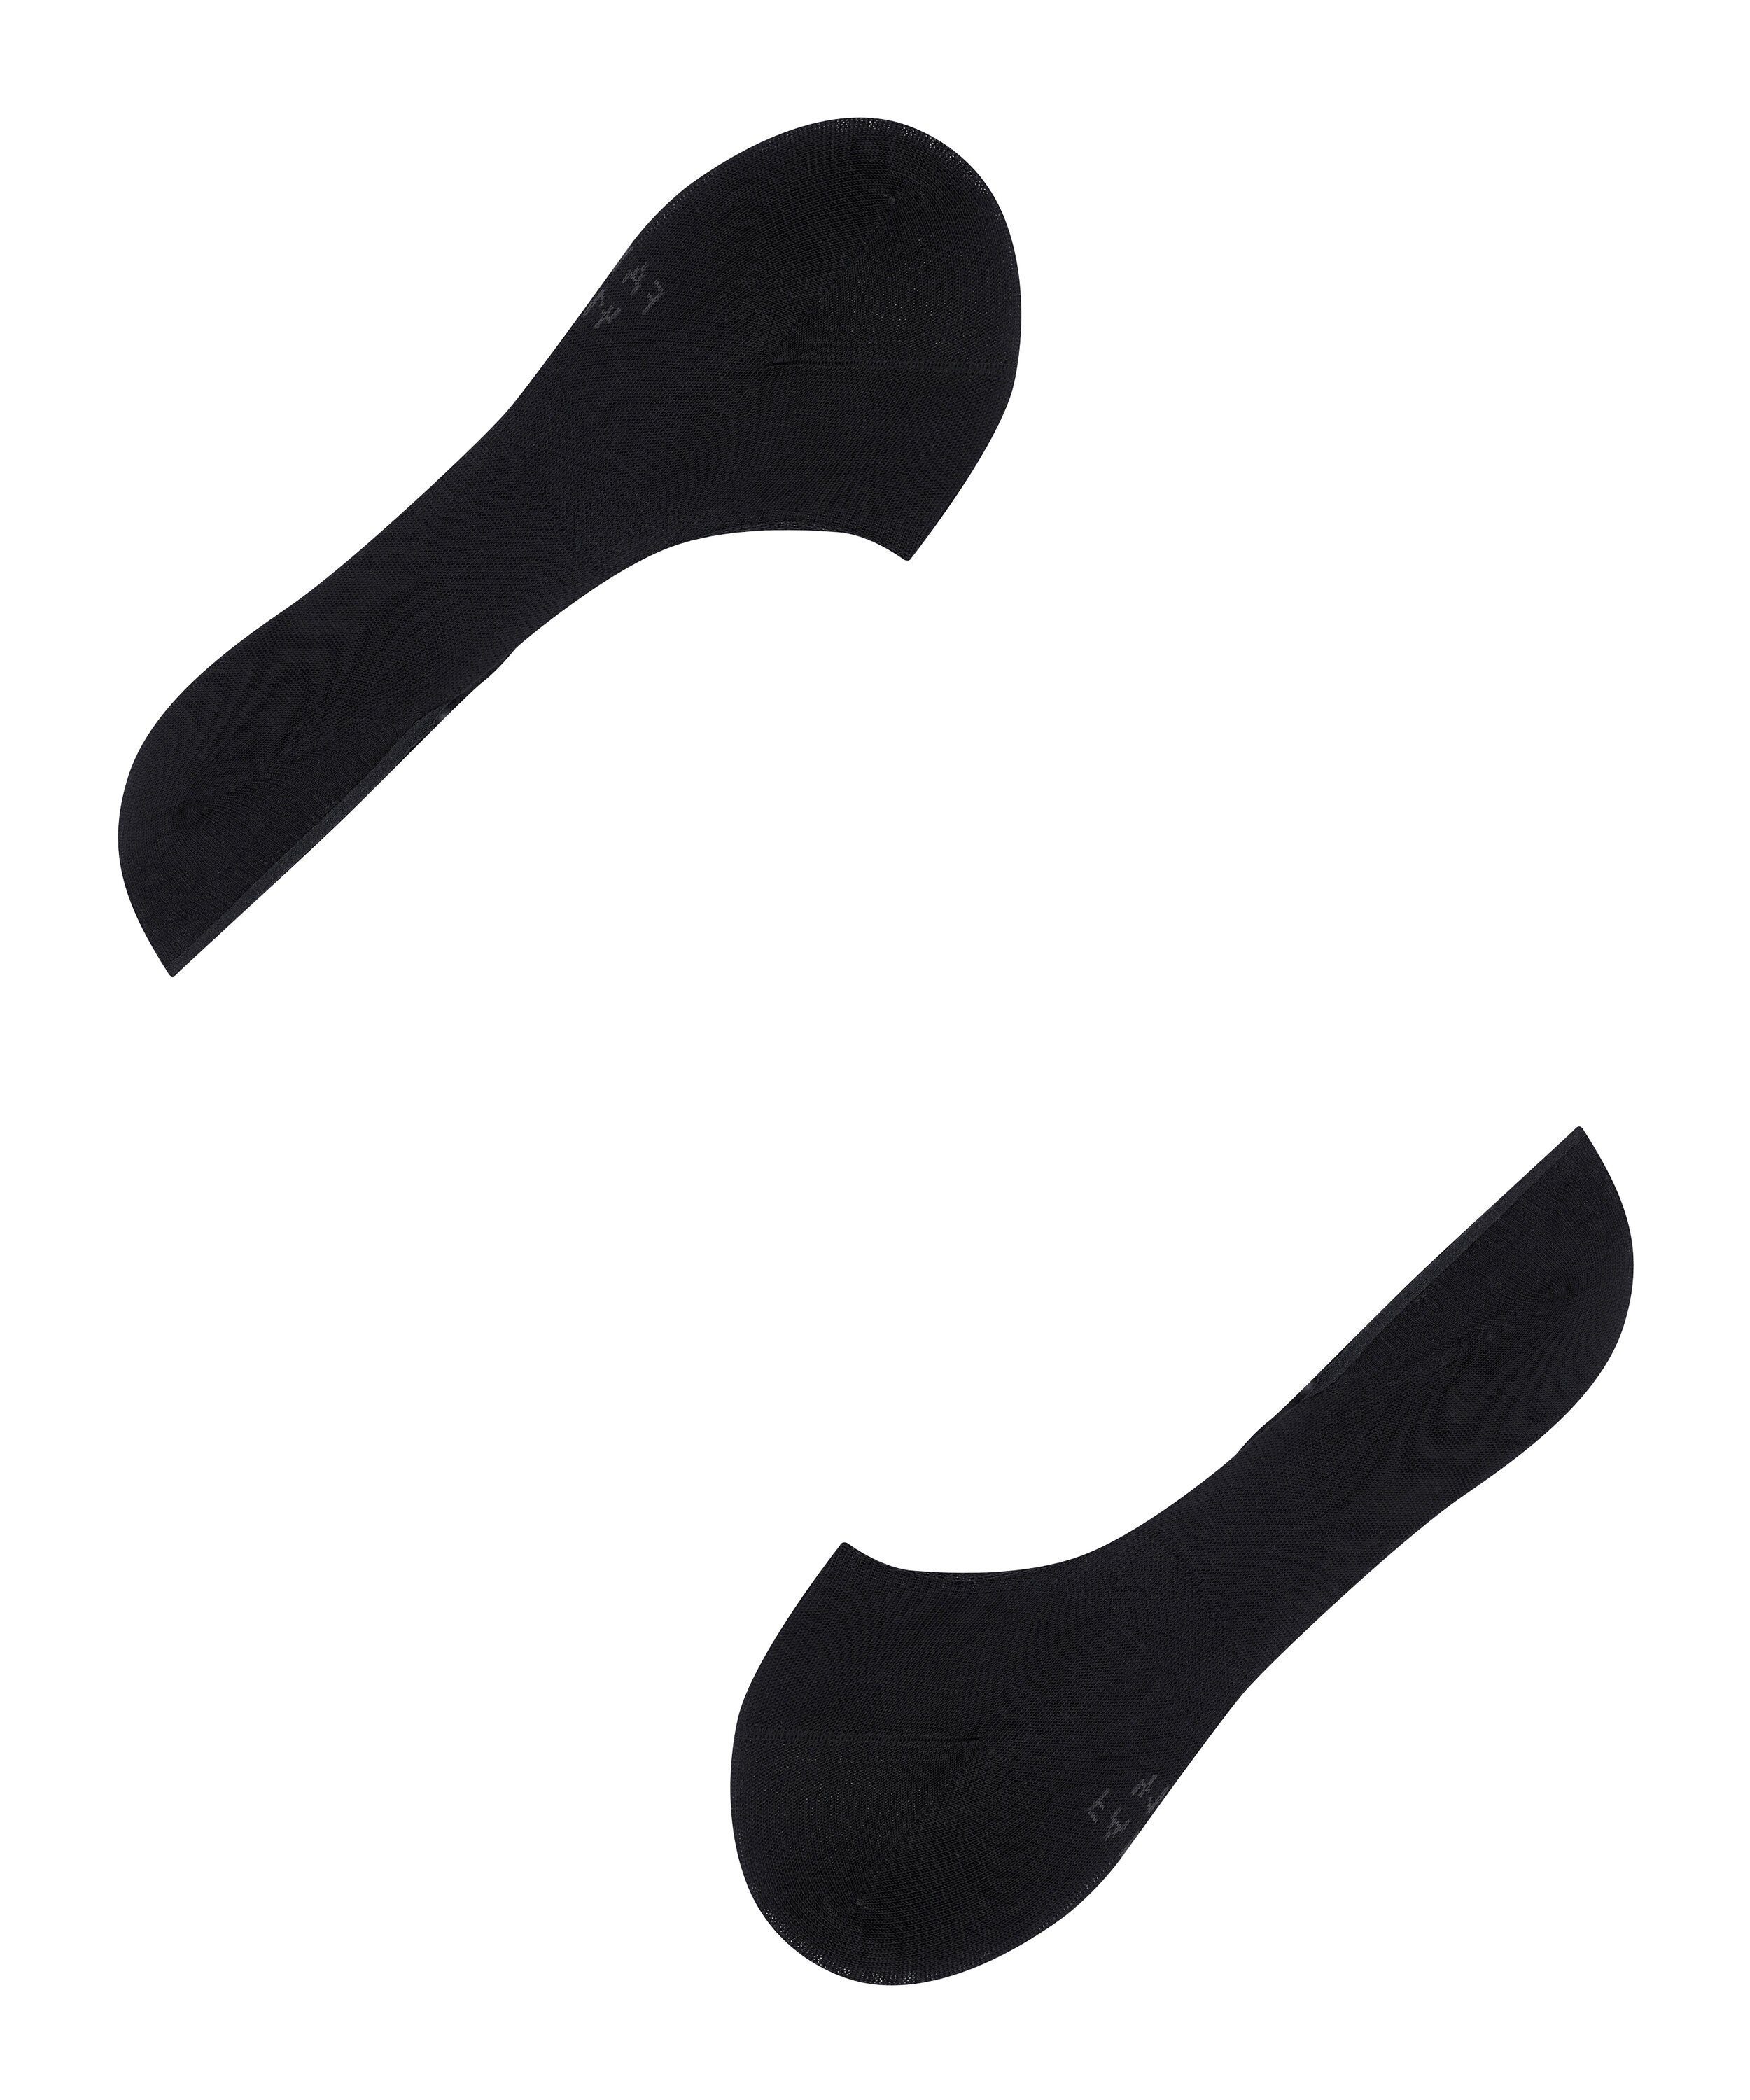 FALKE Box black (3000) Medium Cut Füßlinge Step mit Anti-Slip-System